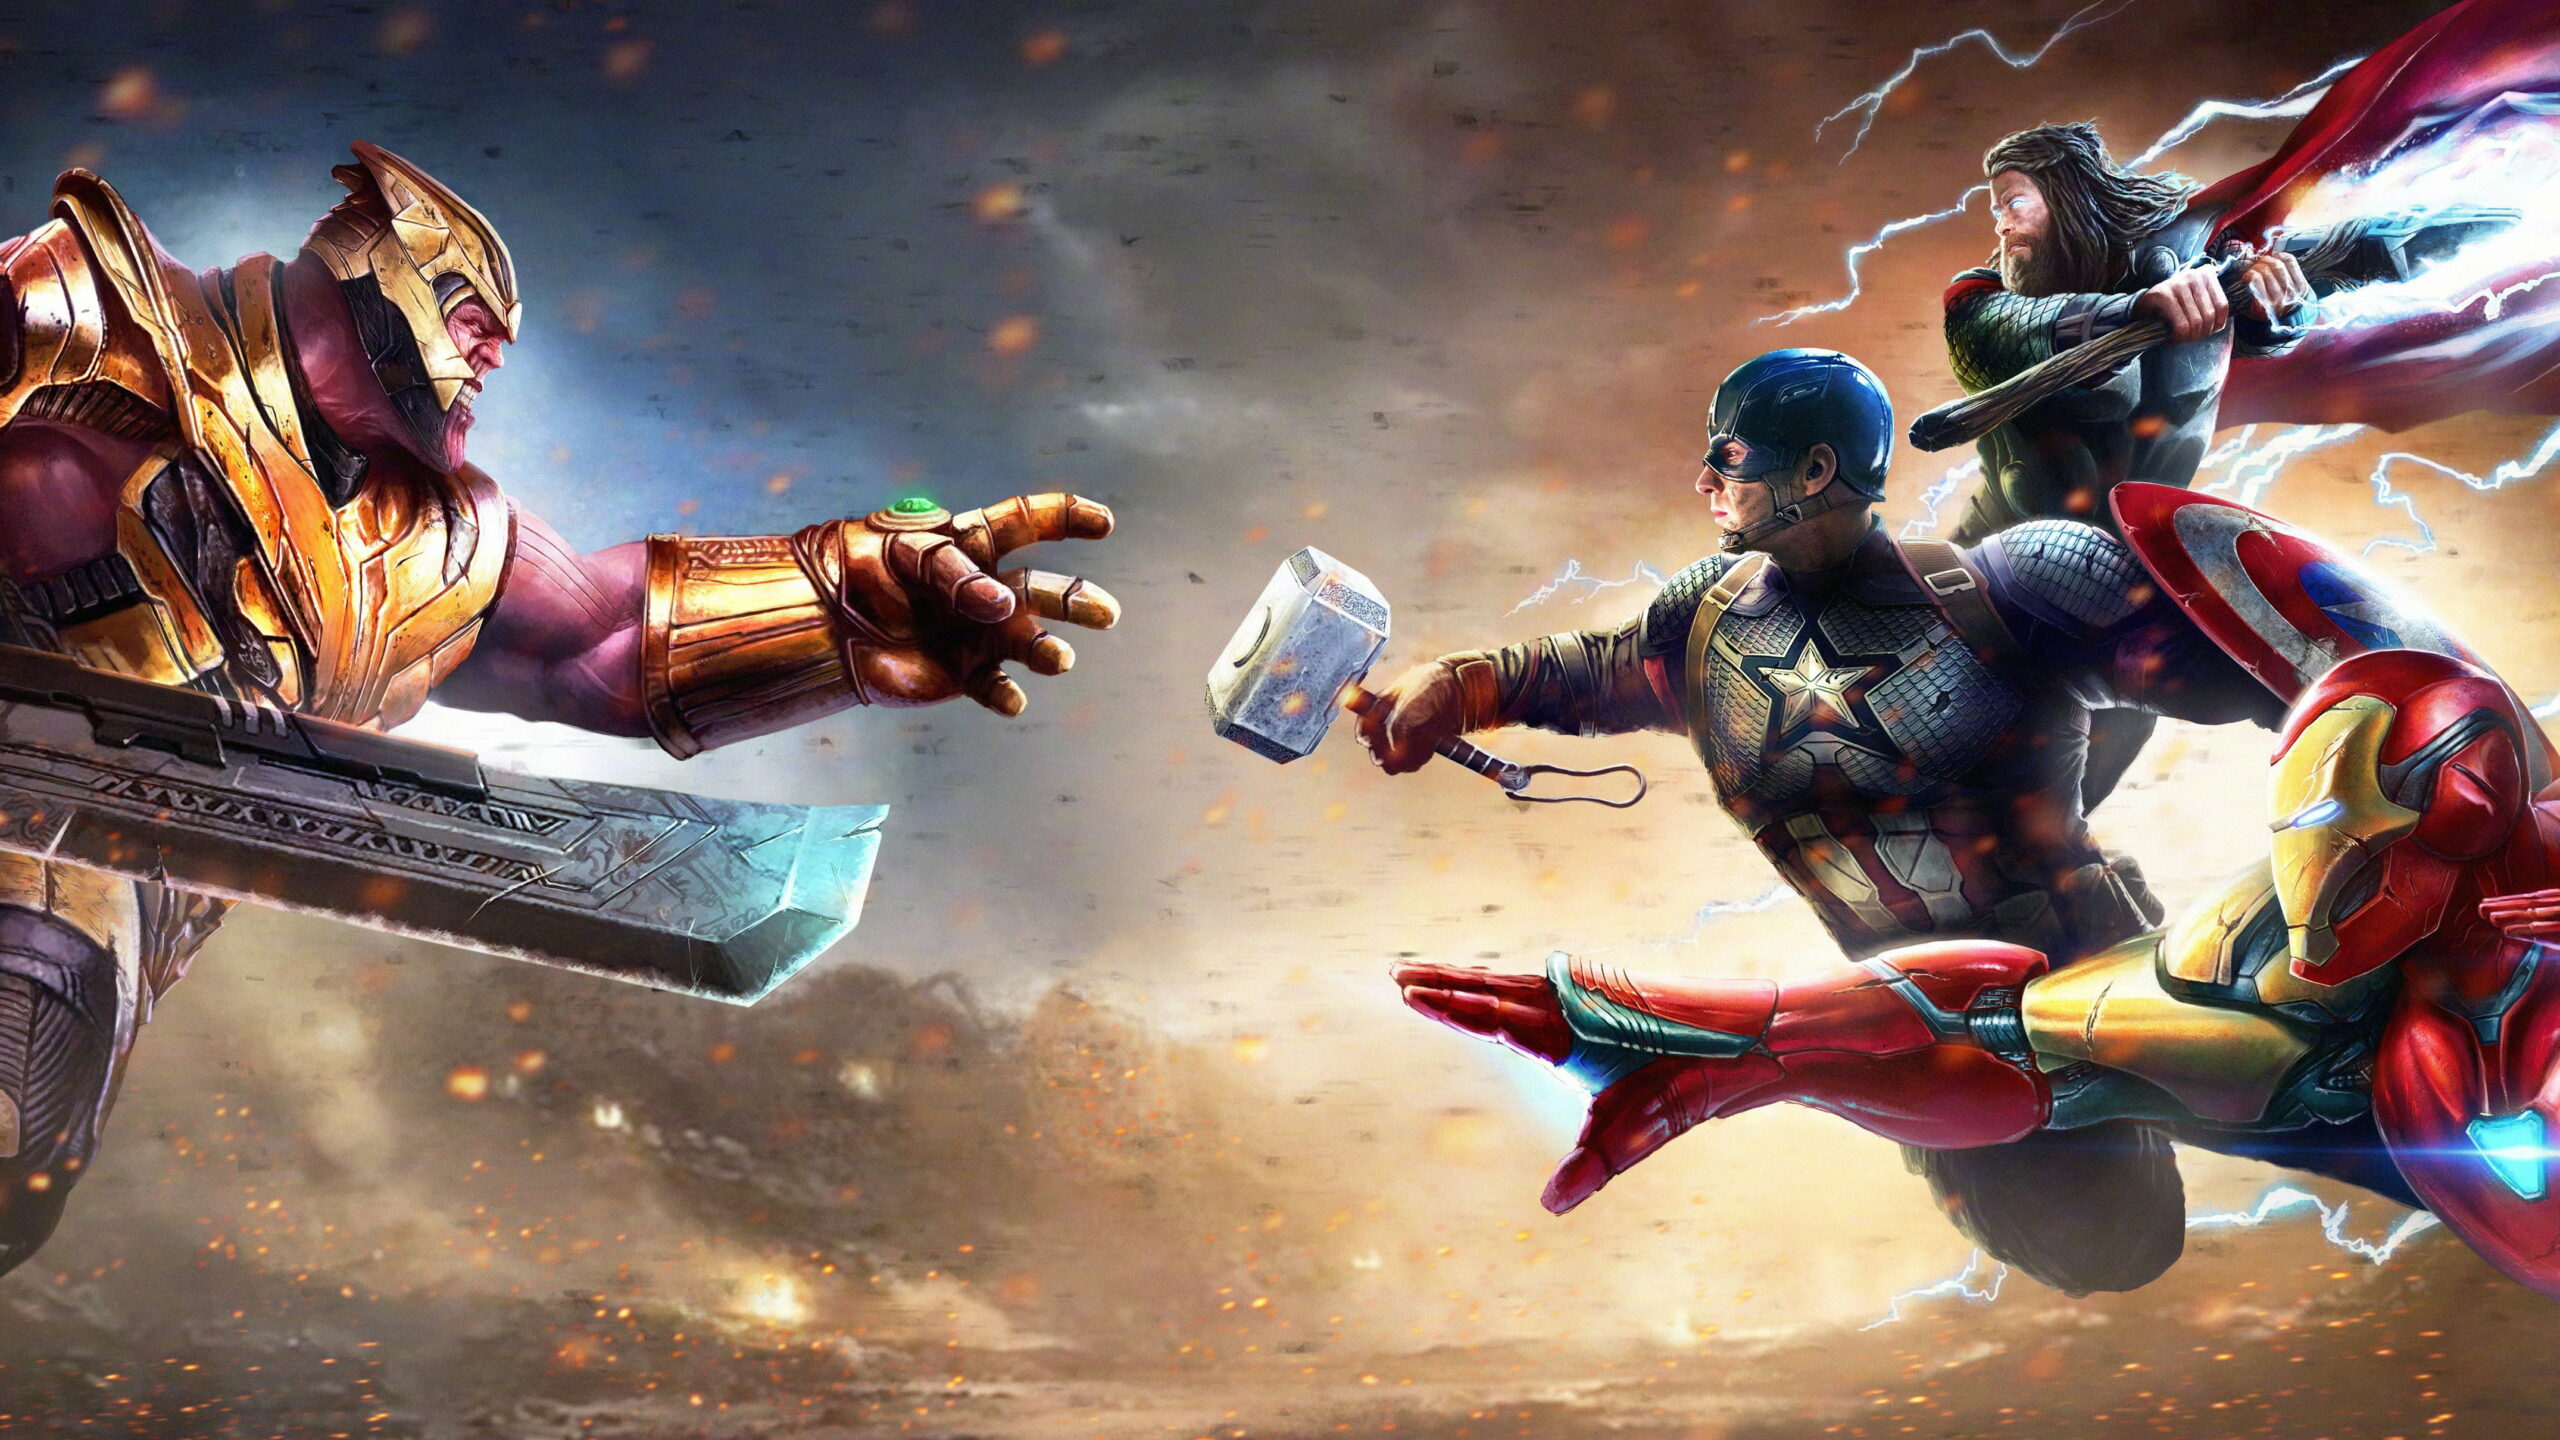 the avengers avengers endgame captain america iron man thanos hd wallpaper 98f7ca0a0d045d55a2a43416da1106f2 scaled